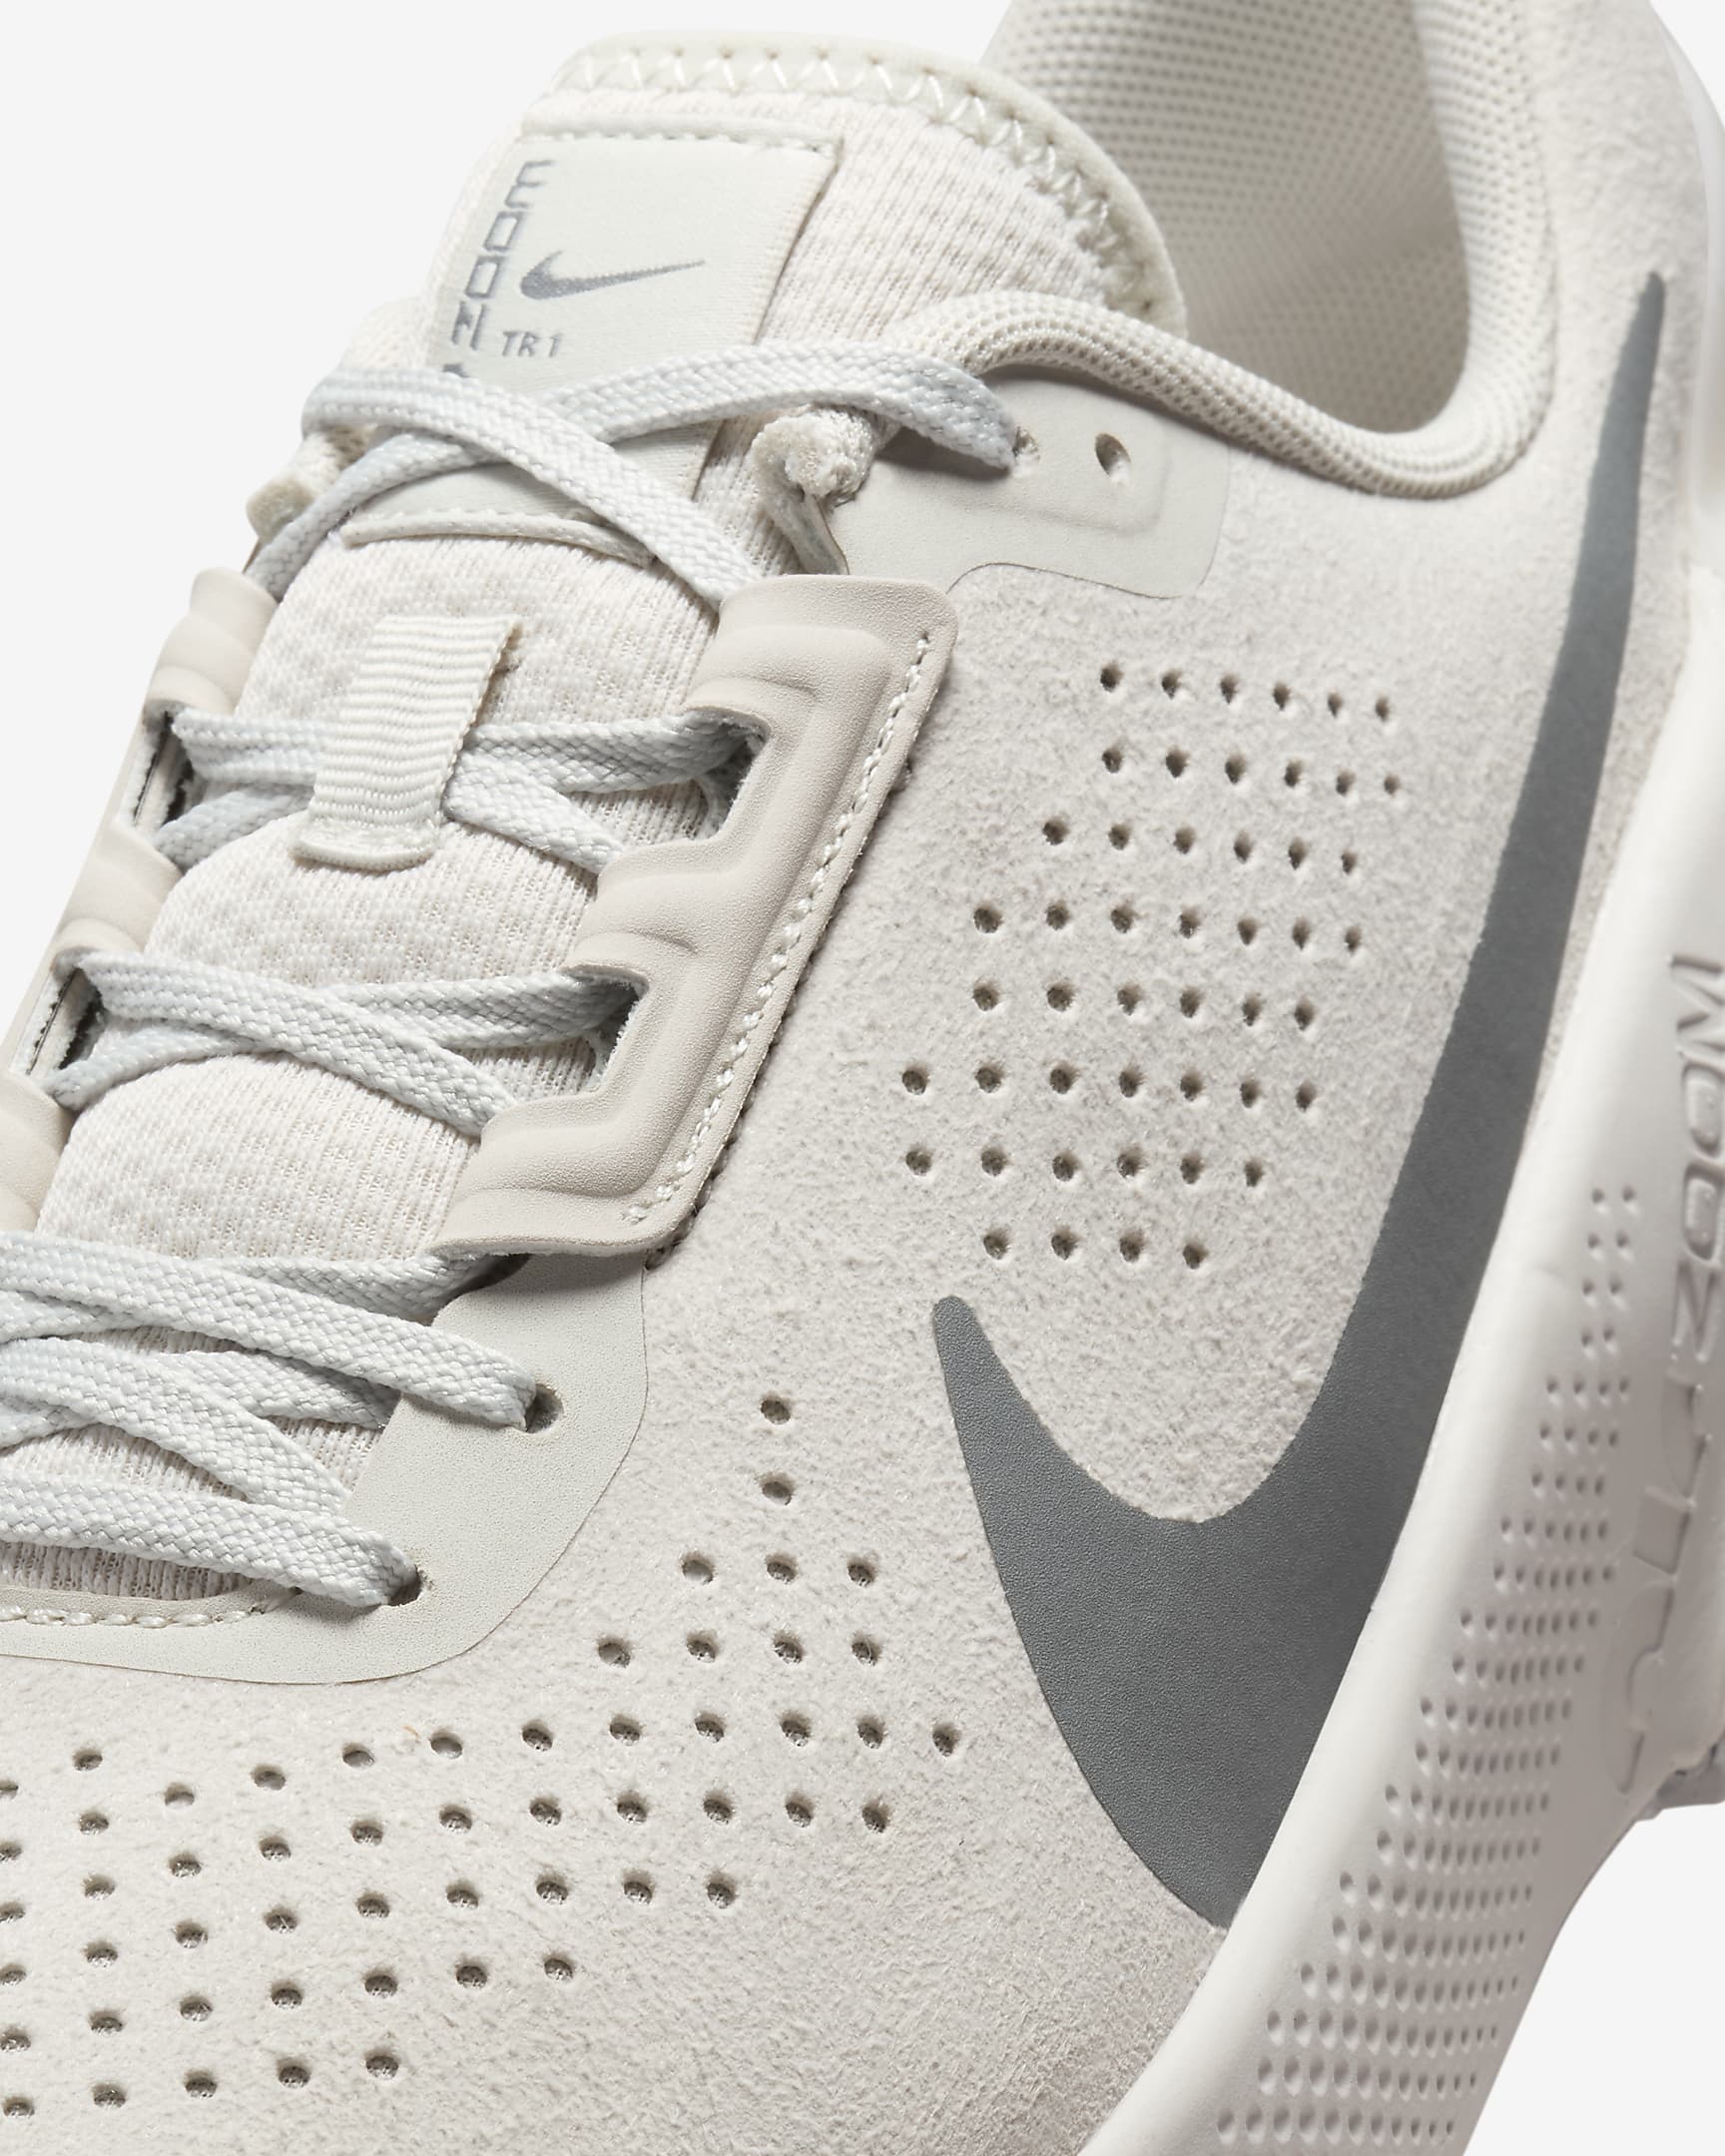 Nike Air Zoom TR 1 Men's Workout Shoes - Light Bone/Monarch/Smoke Grey